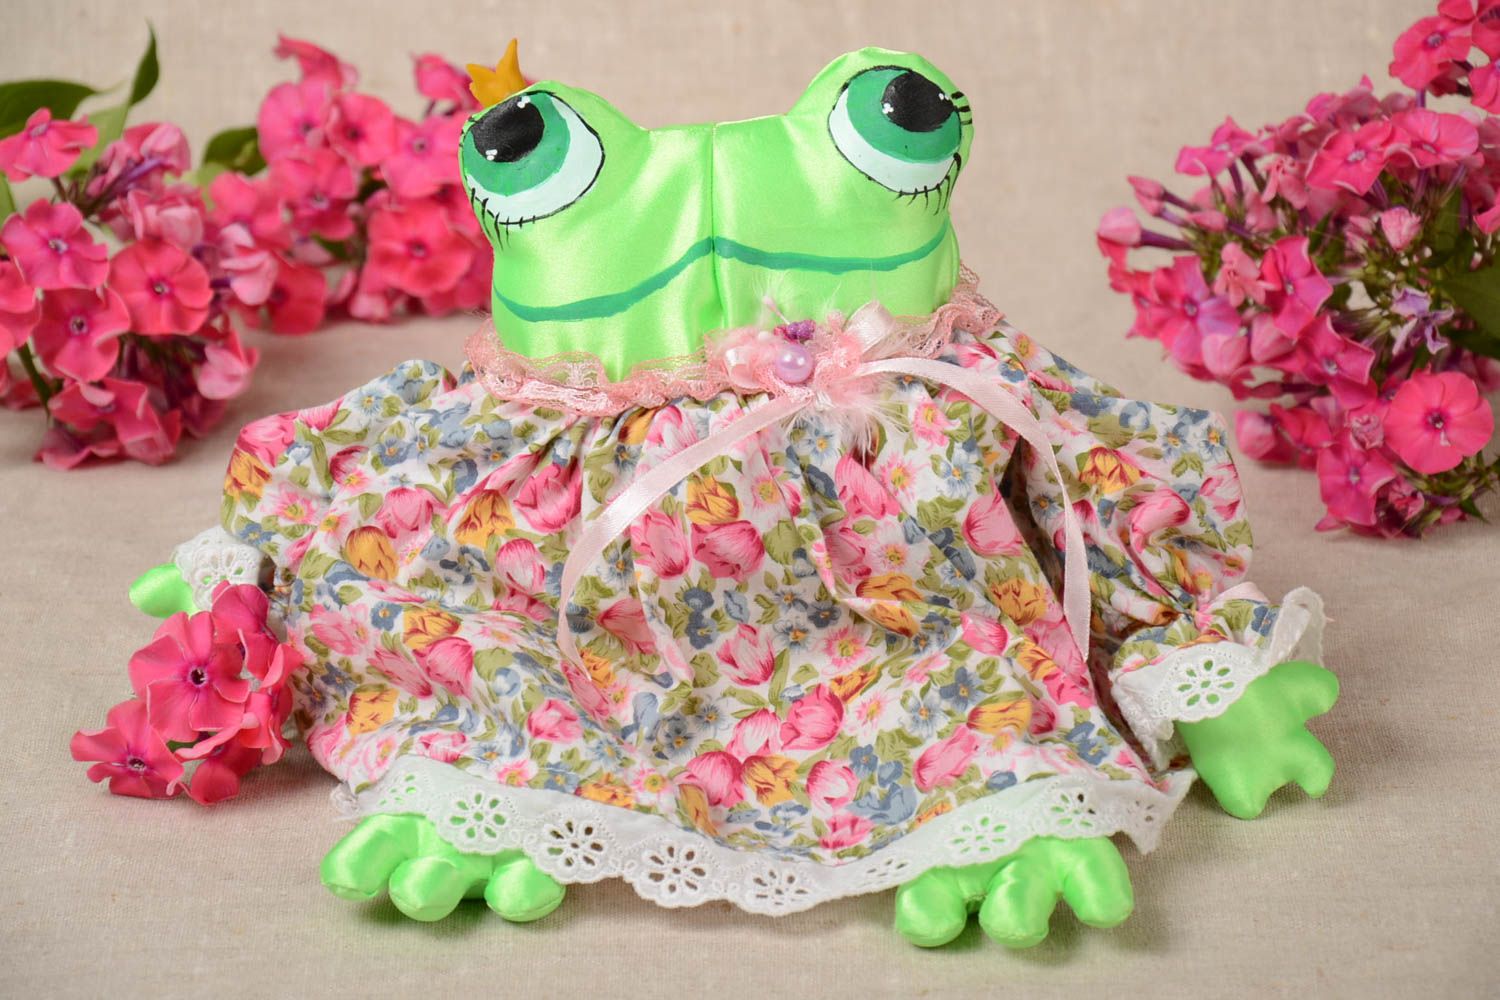 Handmade Frosch Stofftier Kinder Spielzeug Geschenk Idee klein bunt originell foto 1